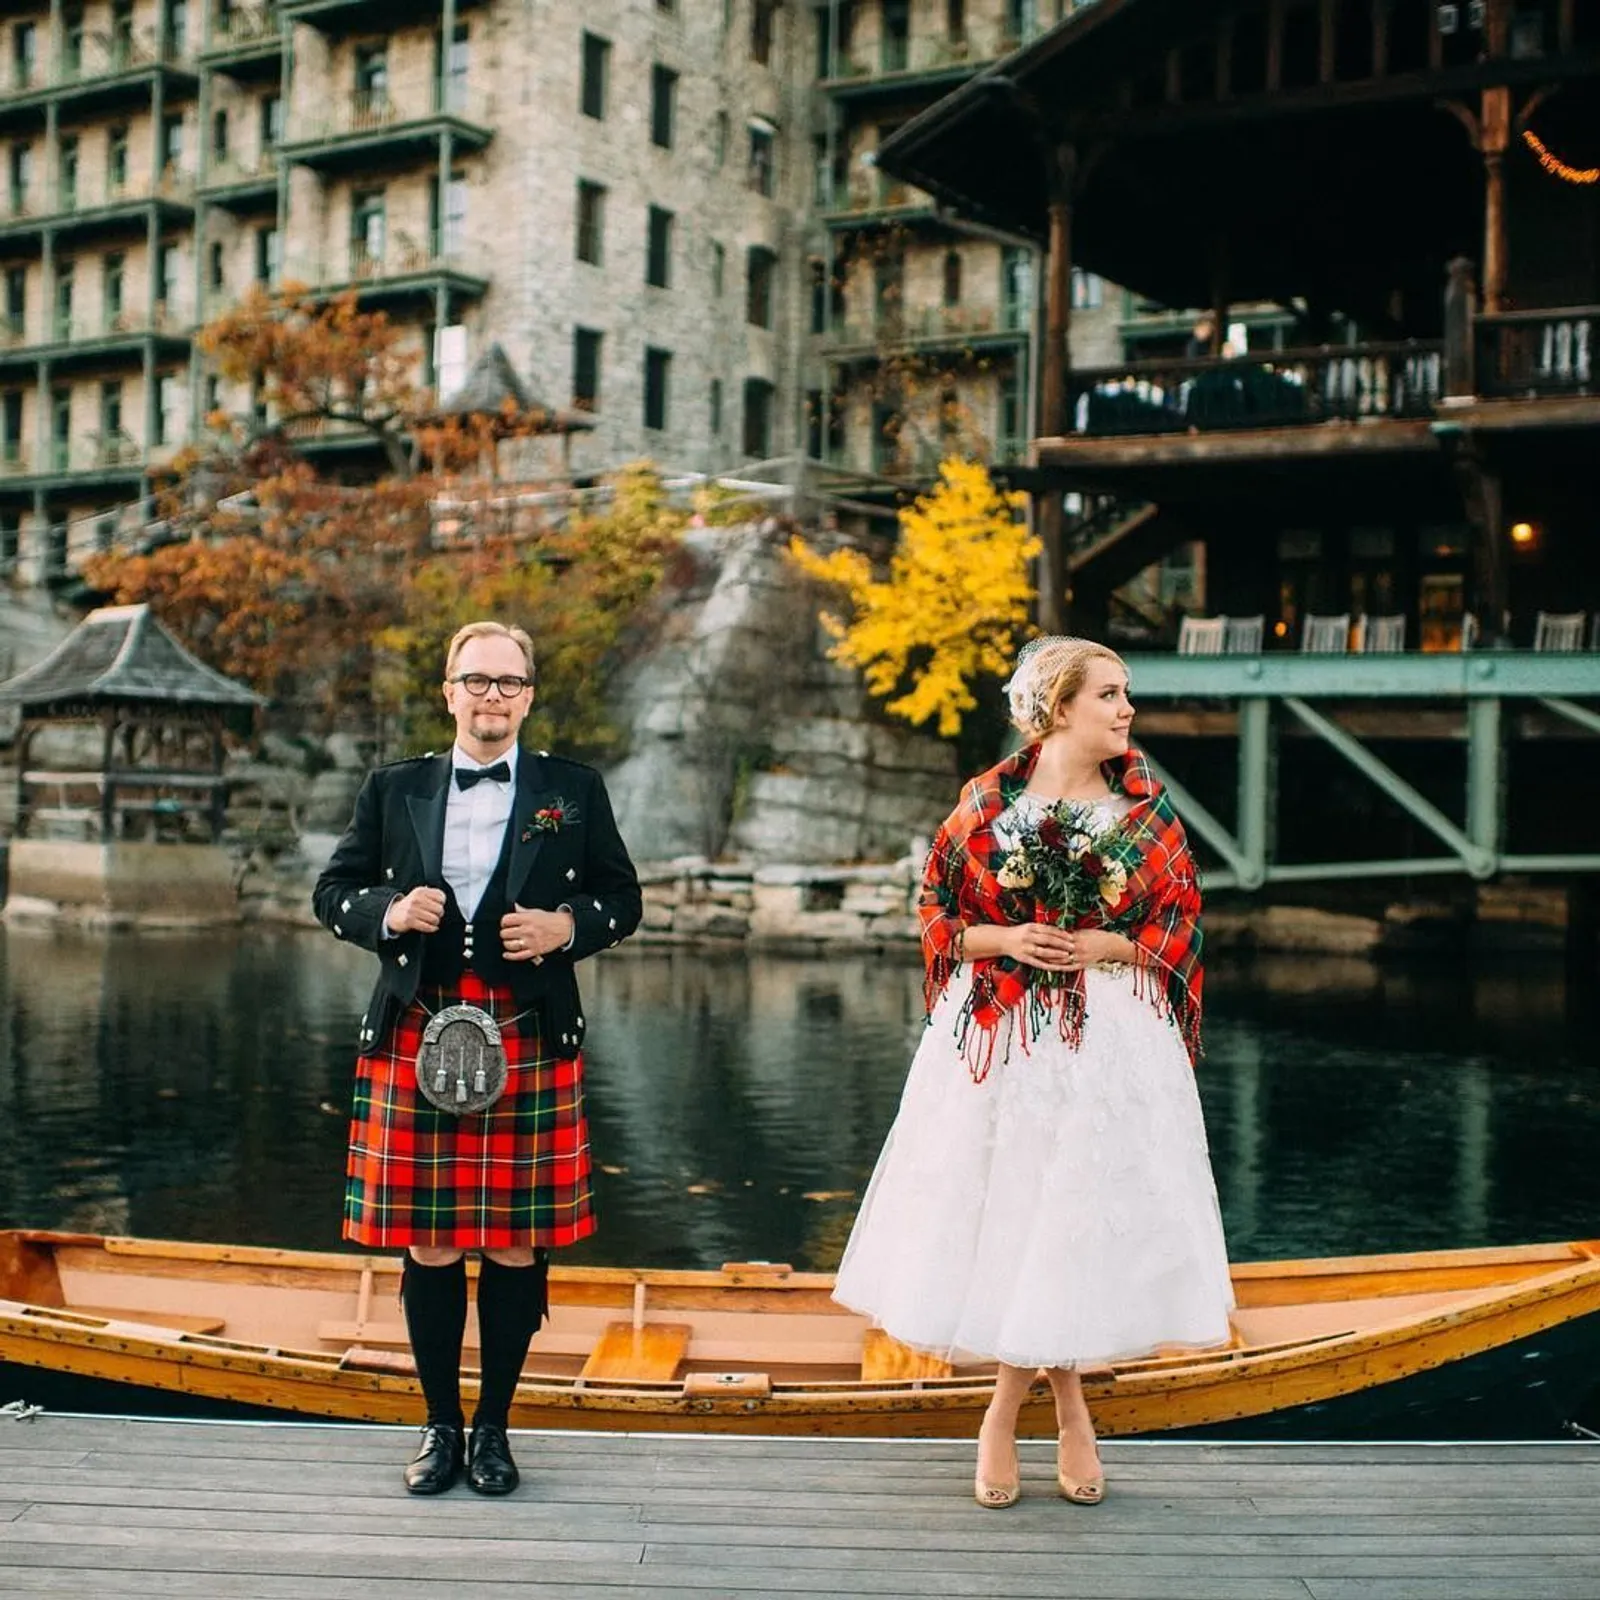 Penuh Arti, Inilah 7 Pakaian Pernikahan Tradisional di Berbagai Negara